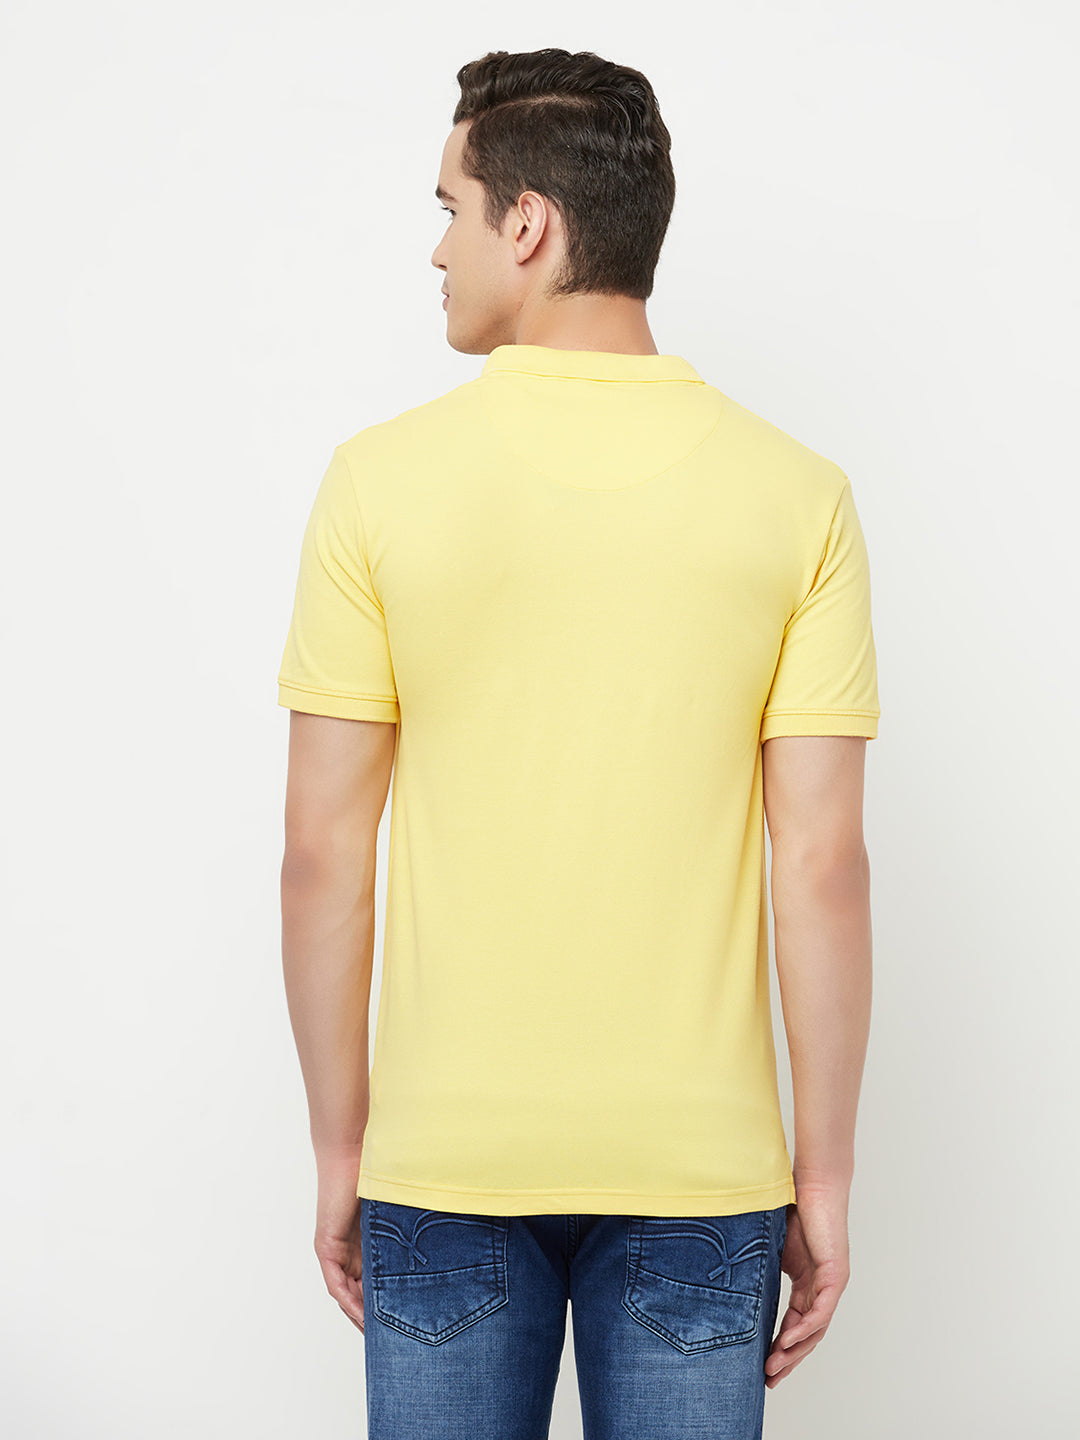 Yellow Polo T-Shirt - Men T-Shirts